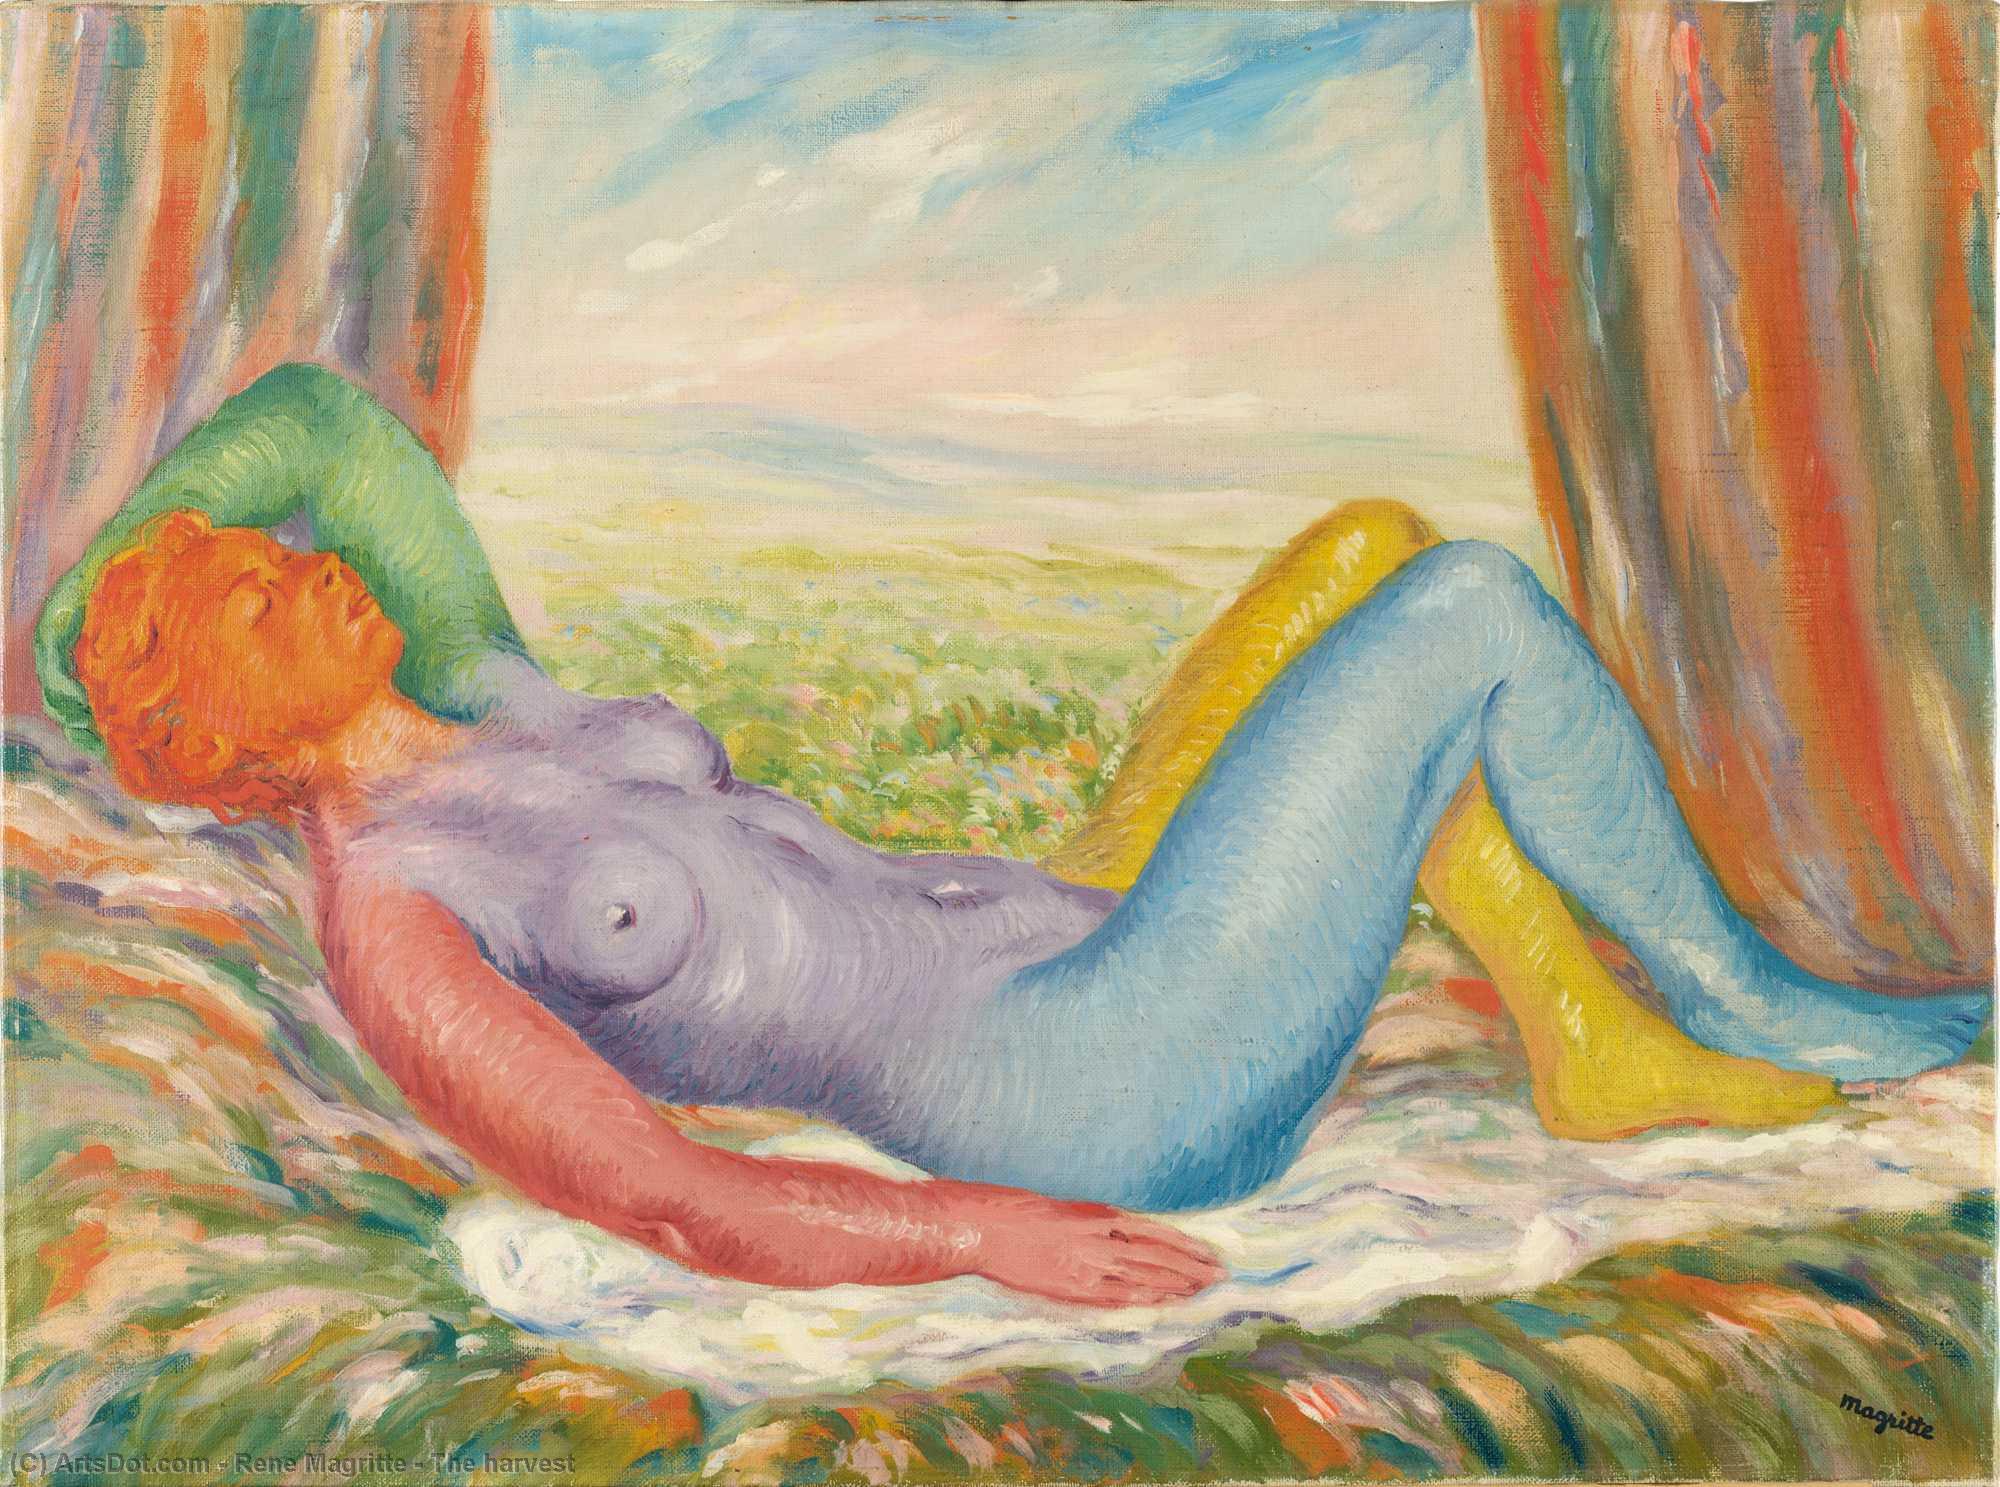 Wikoo.org - موسوعة الفنون الجميلة - اللوحة، العمل الفني Rene Magritte - The harvest